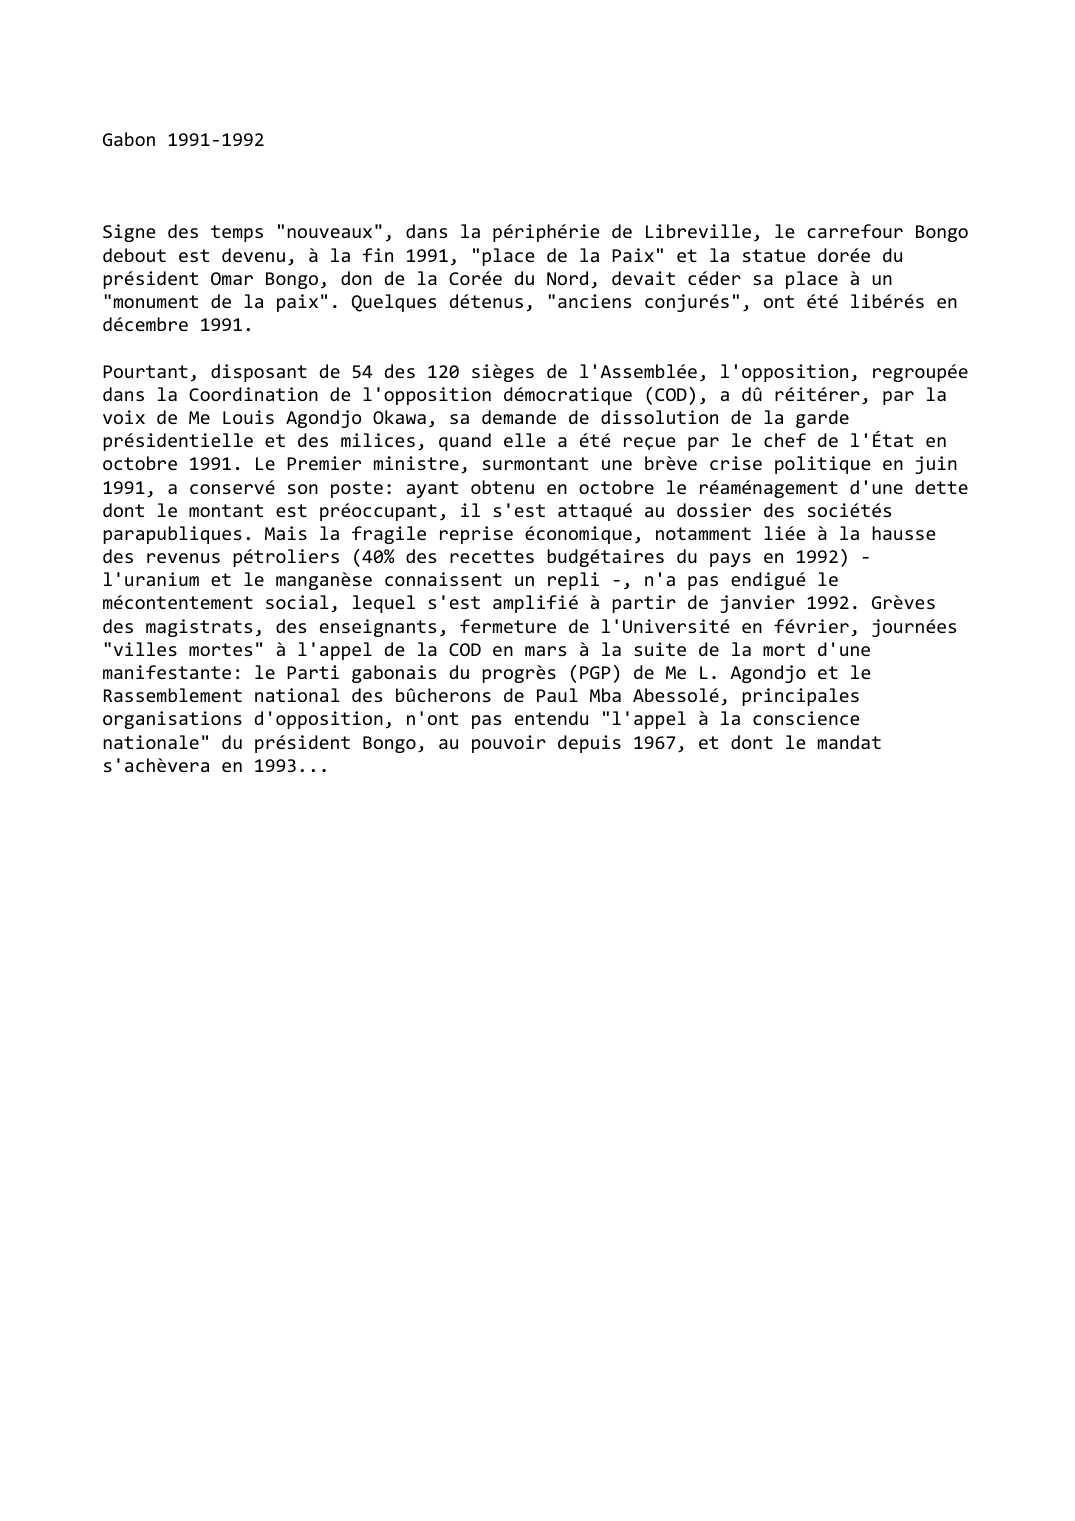 Prévisualisation du document Gabon (1991-1992)